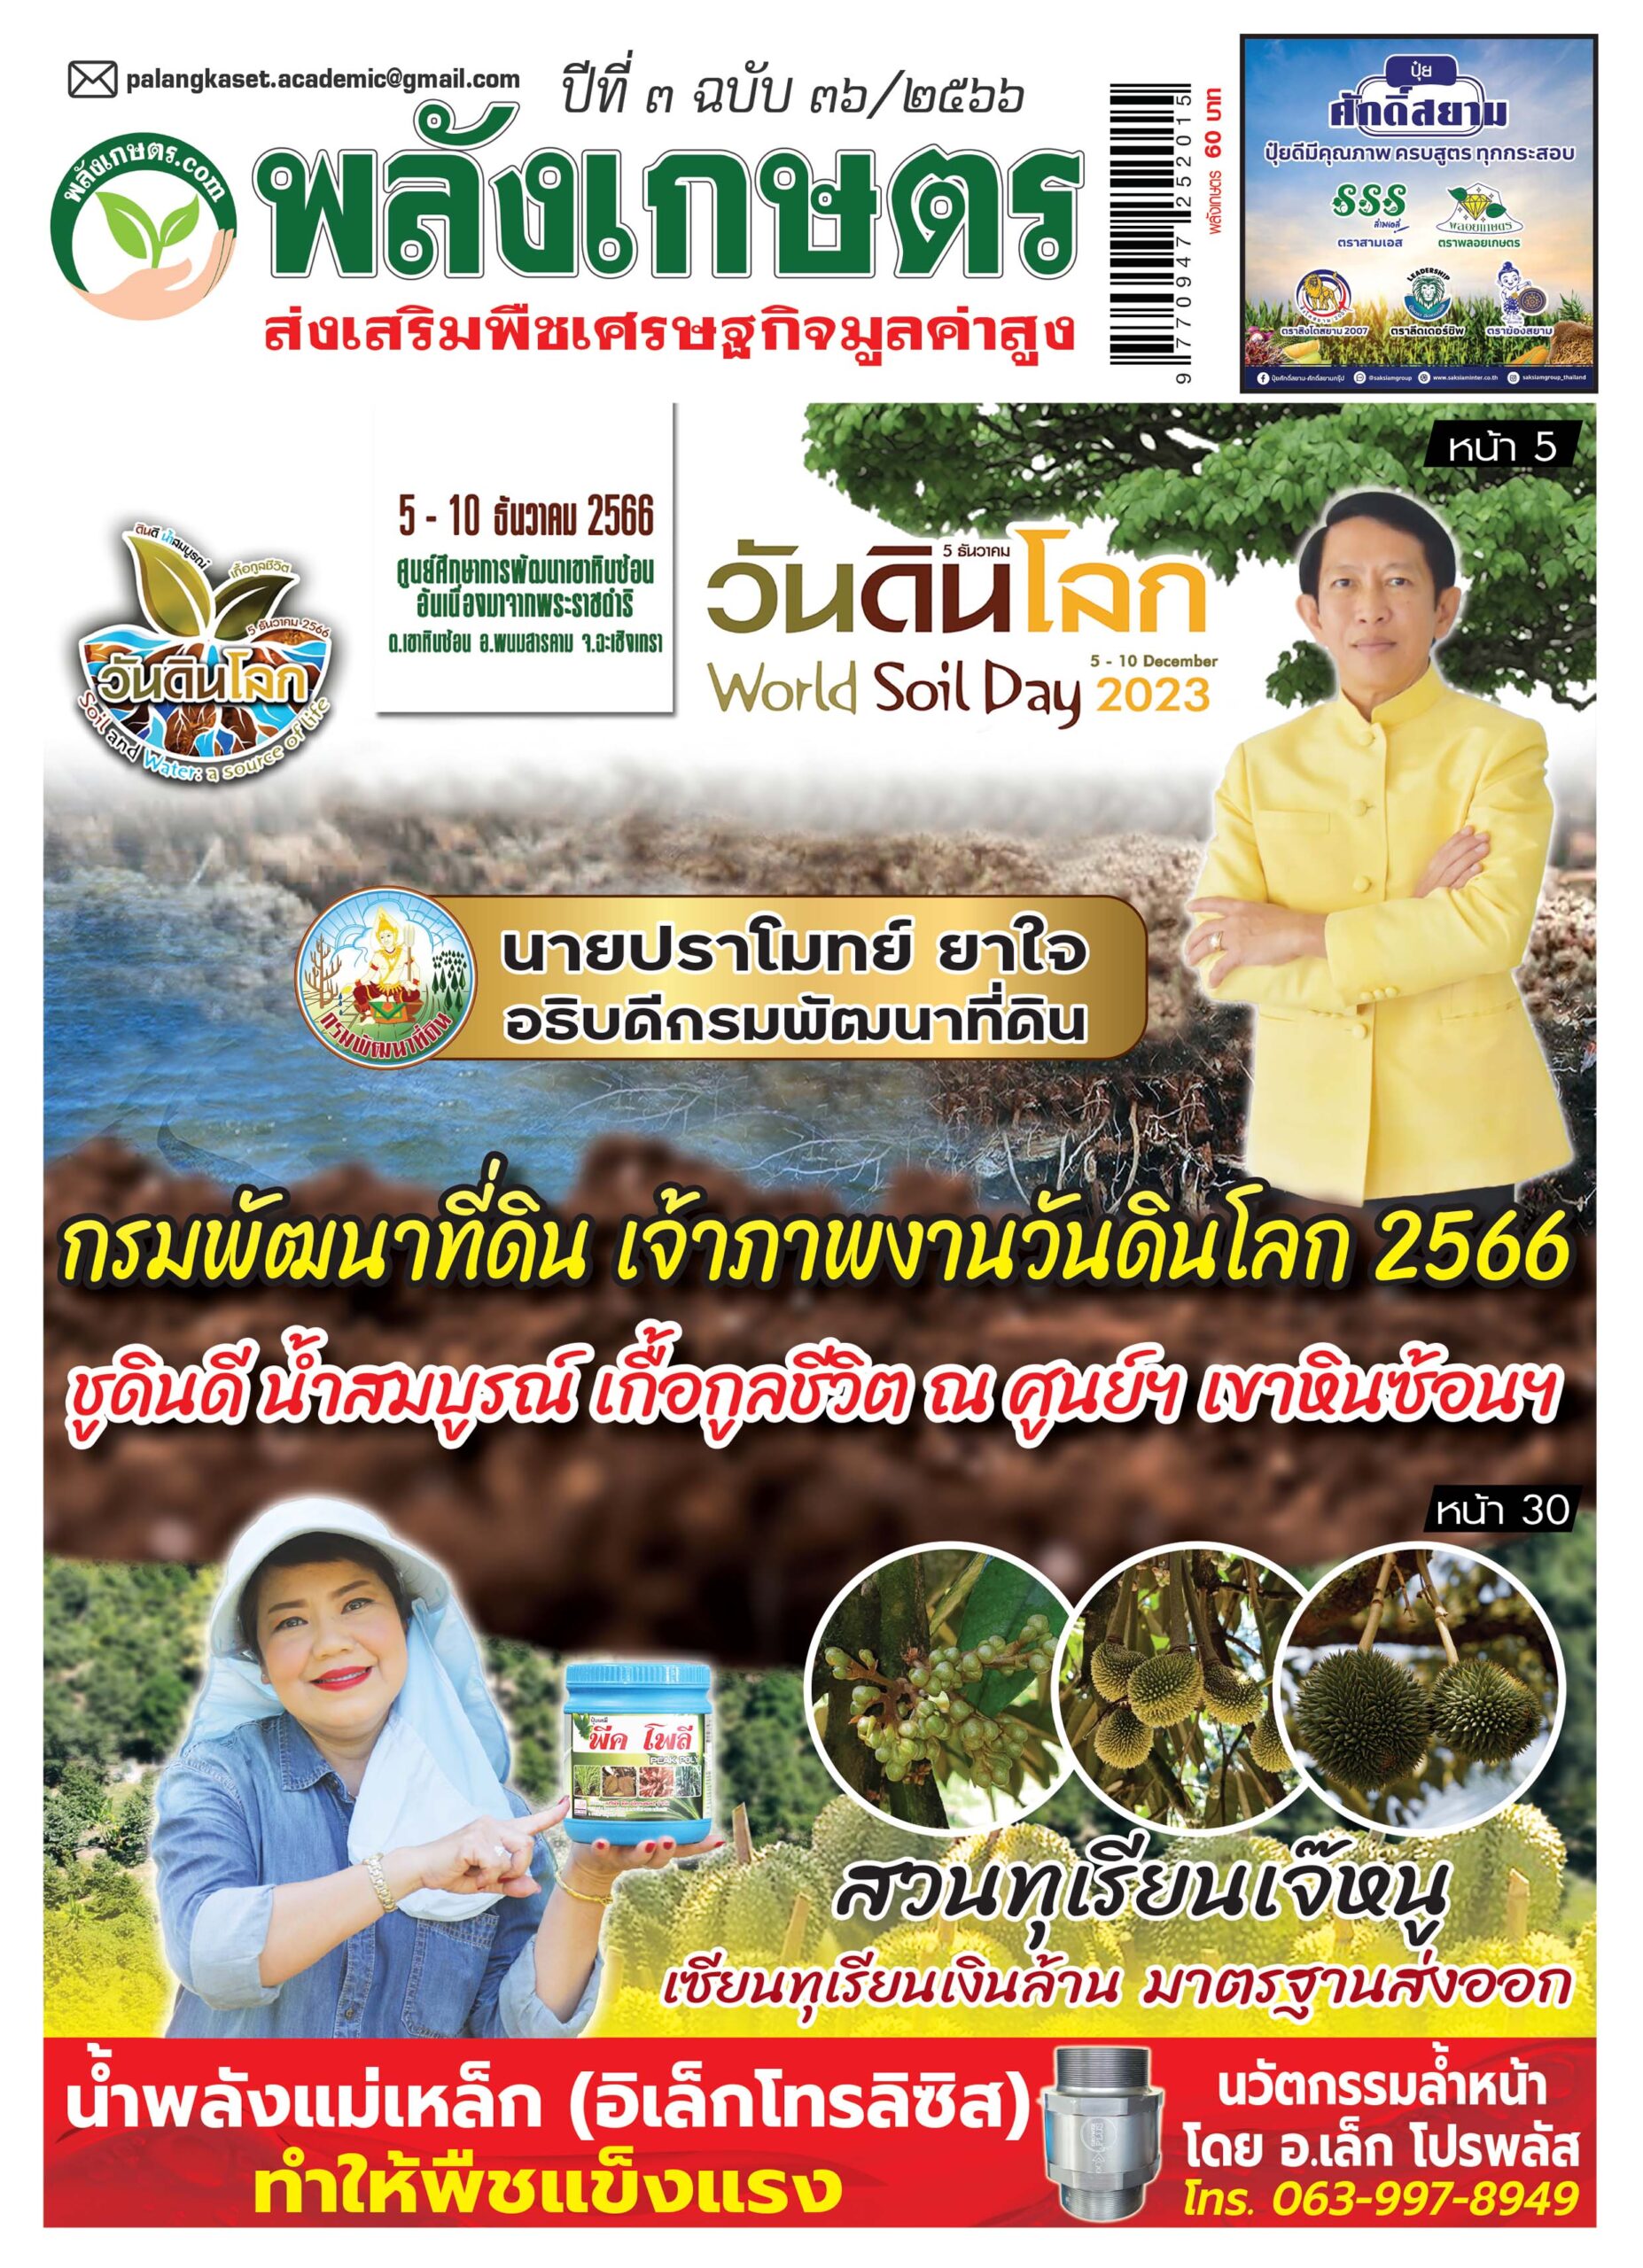 ปก นิตยสารพลังเกษตร ฉบับ 36